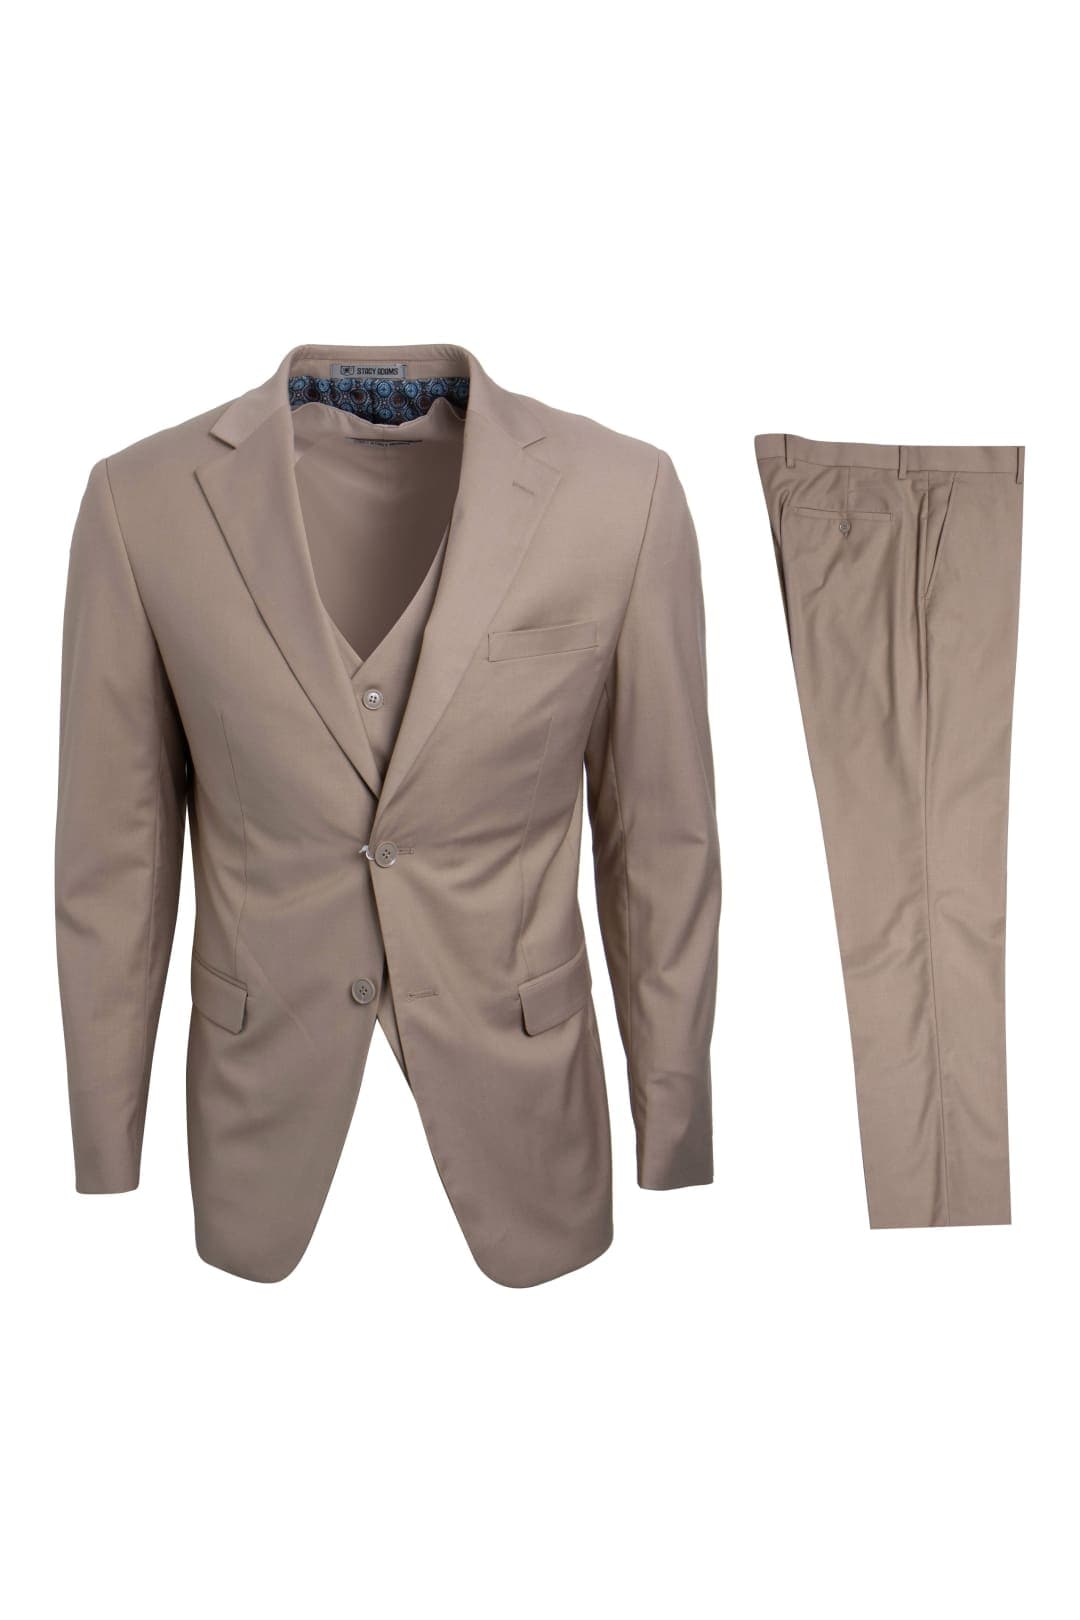 Tan Stacy Adams Men’s Suit - Tan / 34R / SM282H1-07 - Mens-suits